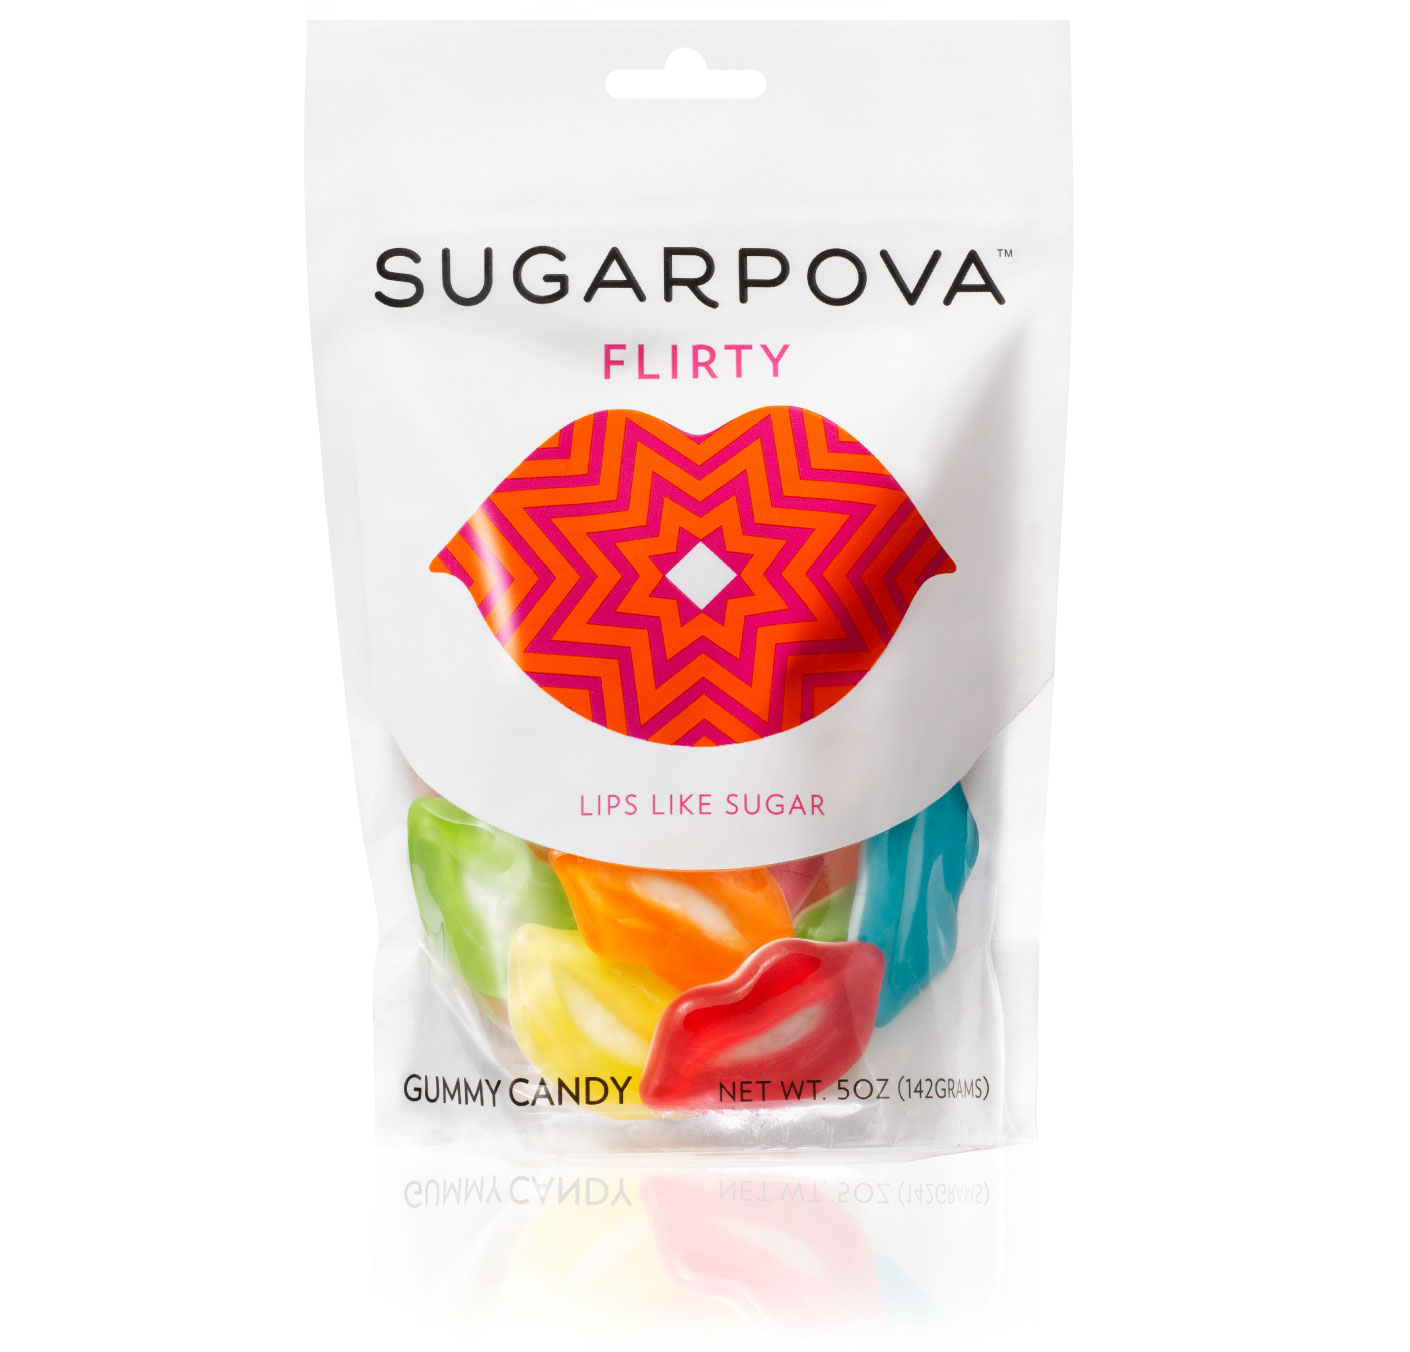 俄网球明星莎拉波娃的糖果品牌-Sugarpova